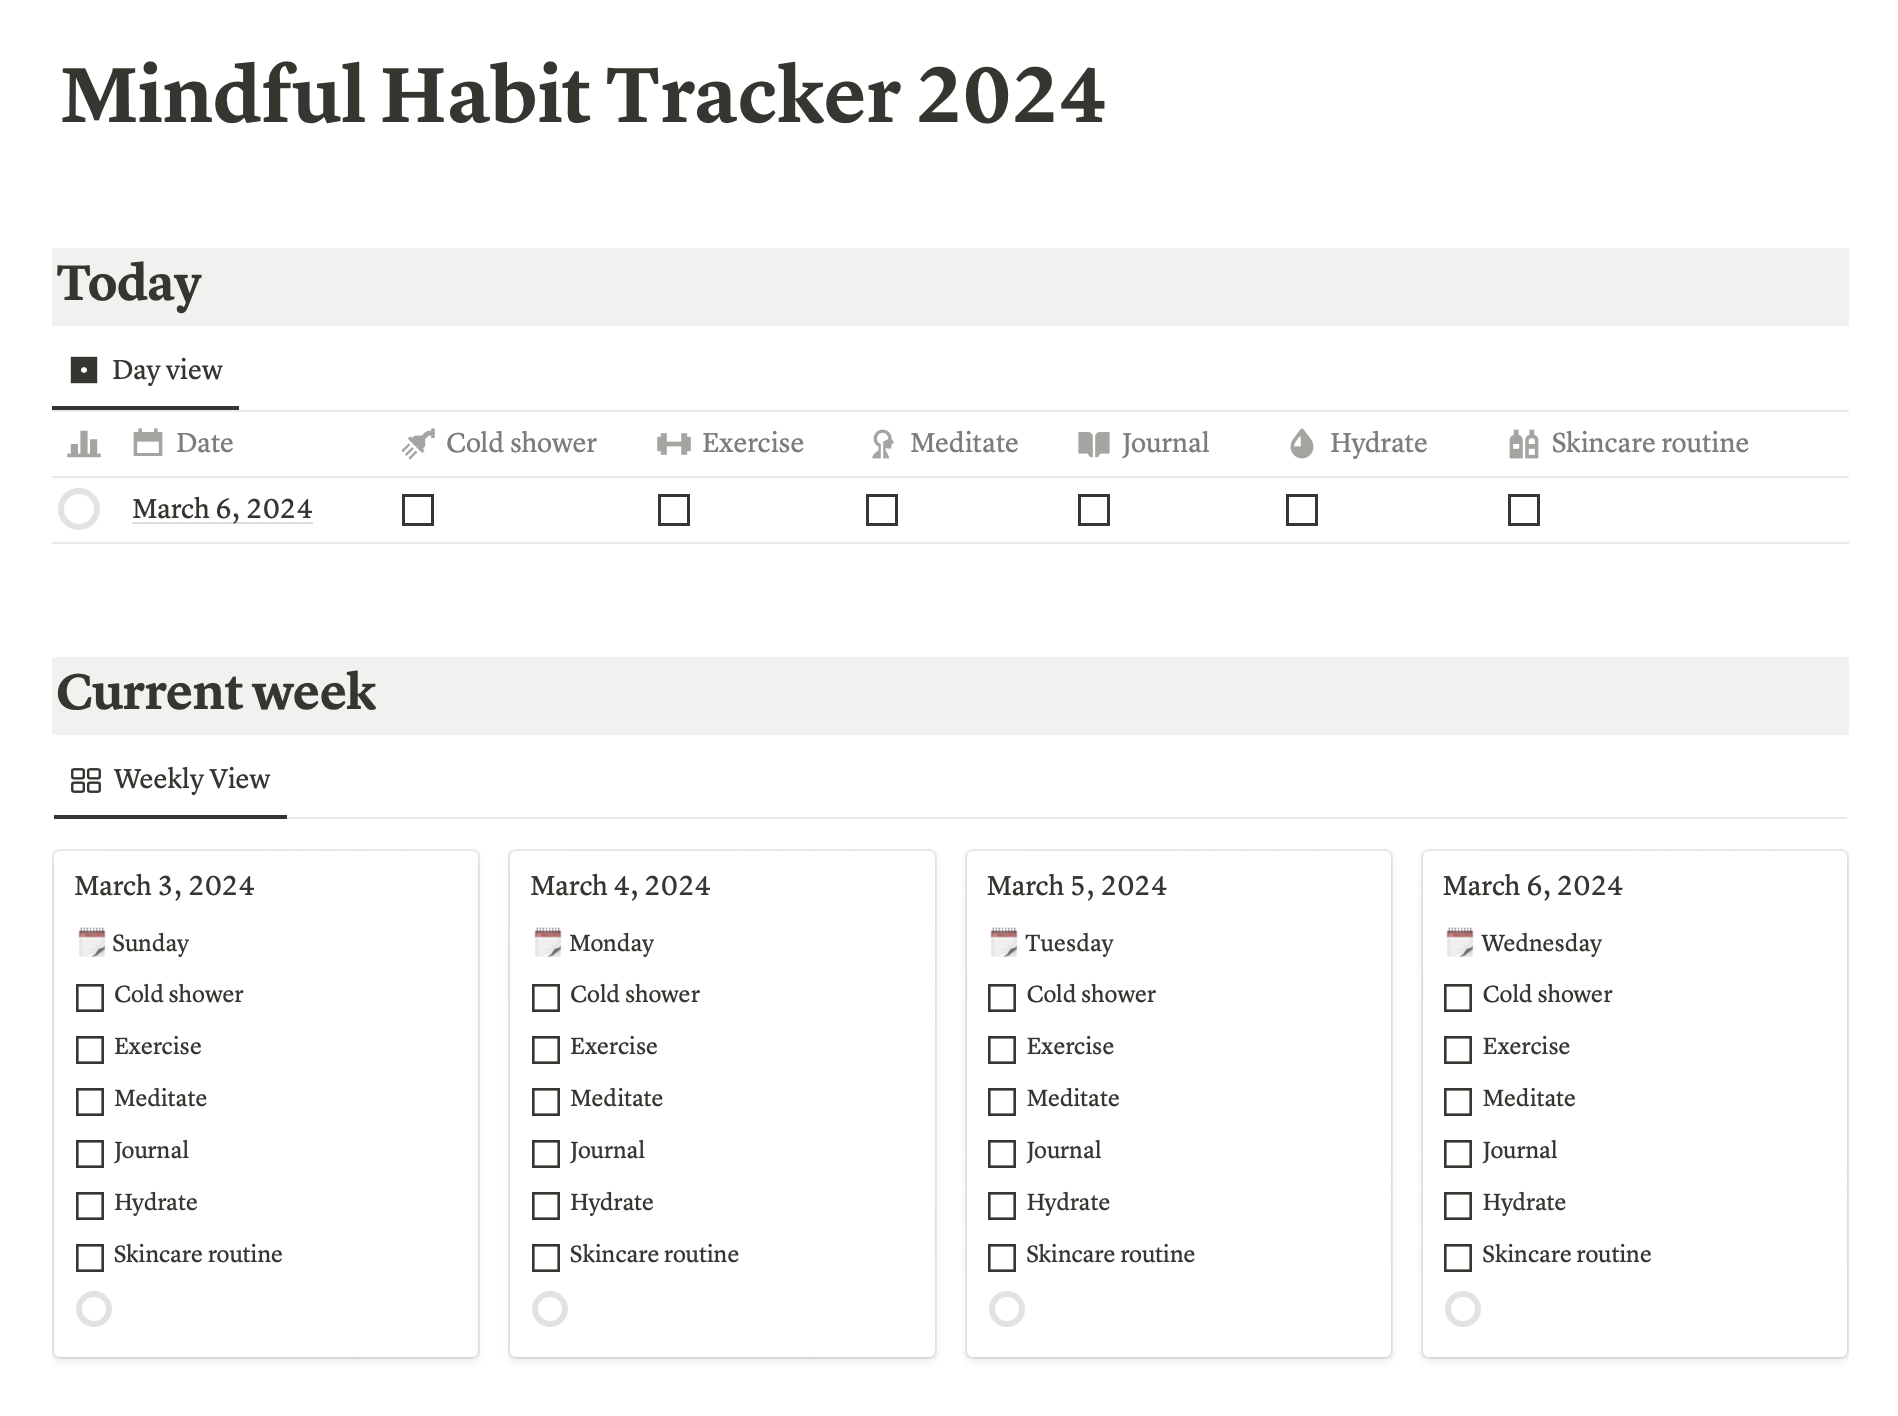 Трекер привычек из Mindful Habit Tracker: холодный душ, упражнения, медитации, ведение дневника, питье воды, уход за кожей